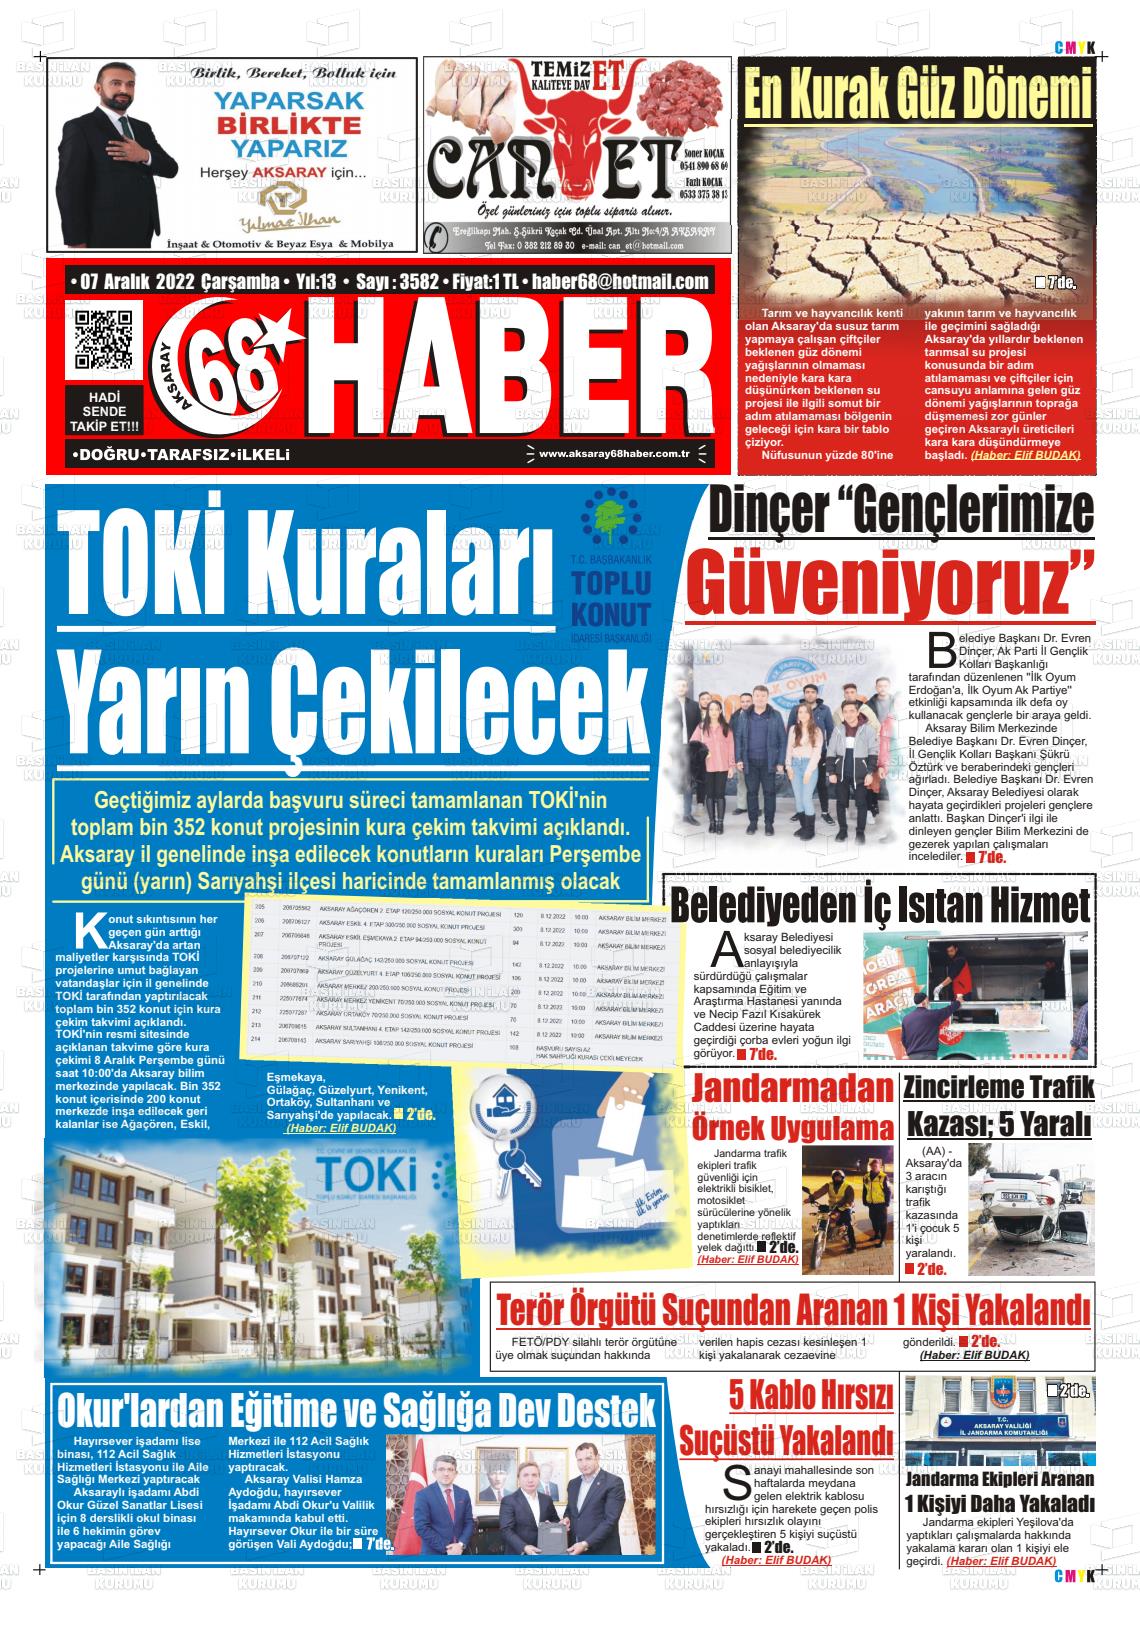 07 Aralık 2022 Aksaray 68 Haber Gazete Manşeti